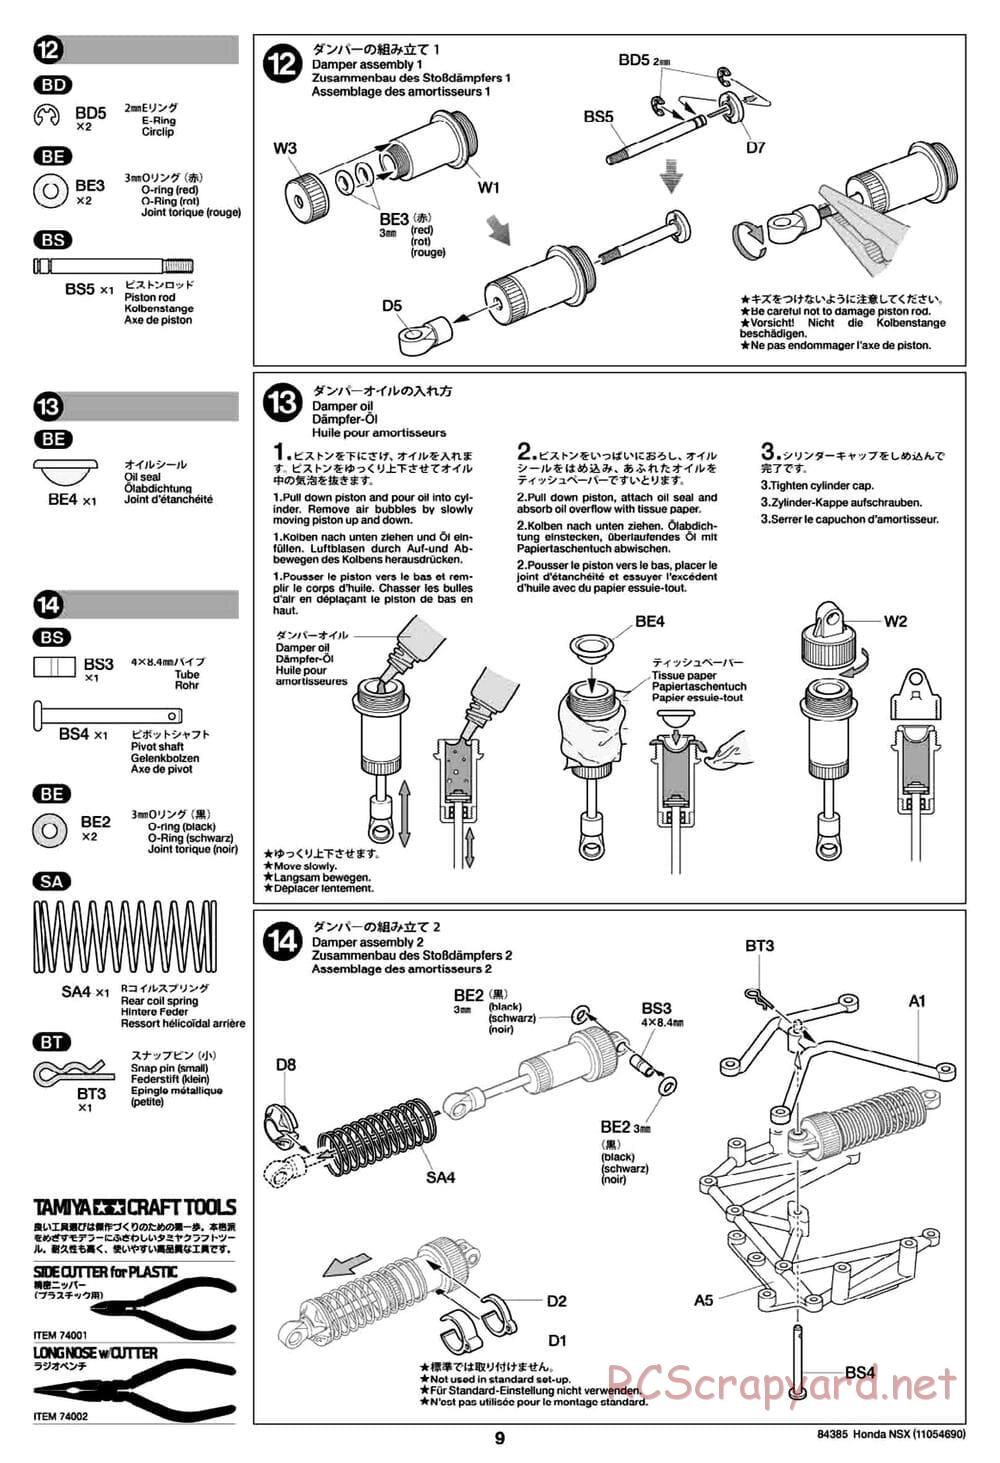 Tamiya - Honda NSX - Group-C Chassis - Manual - Page 9